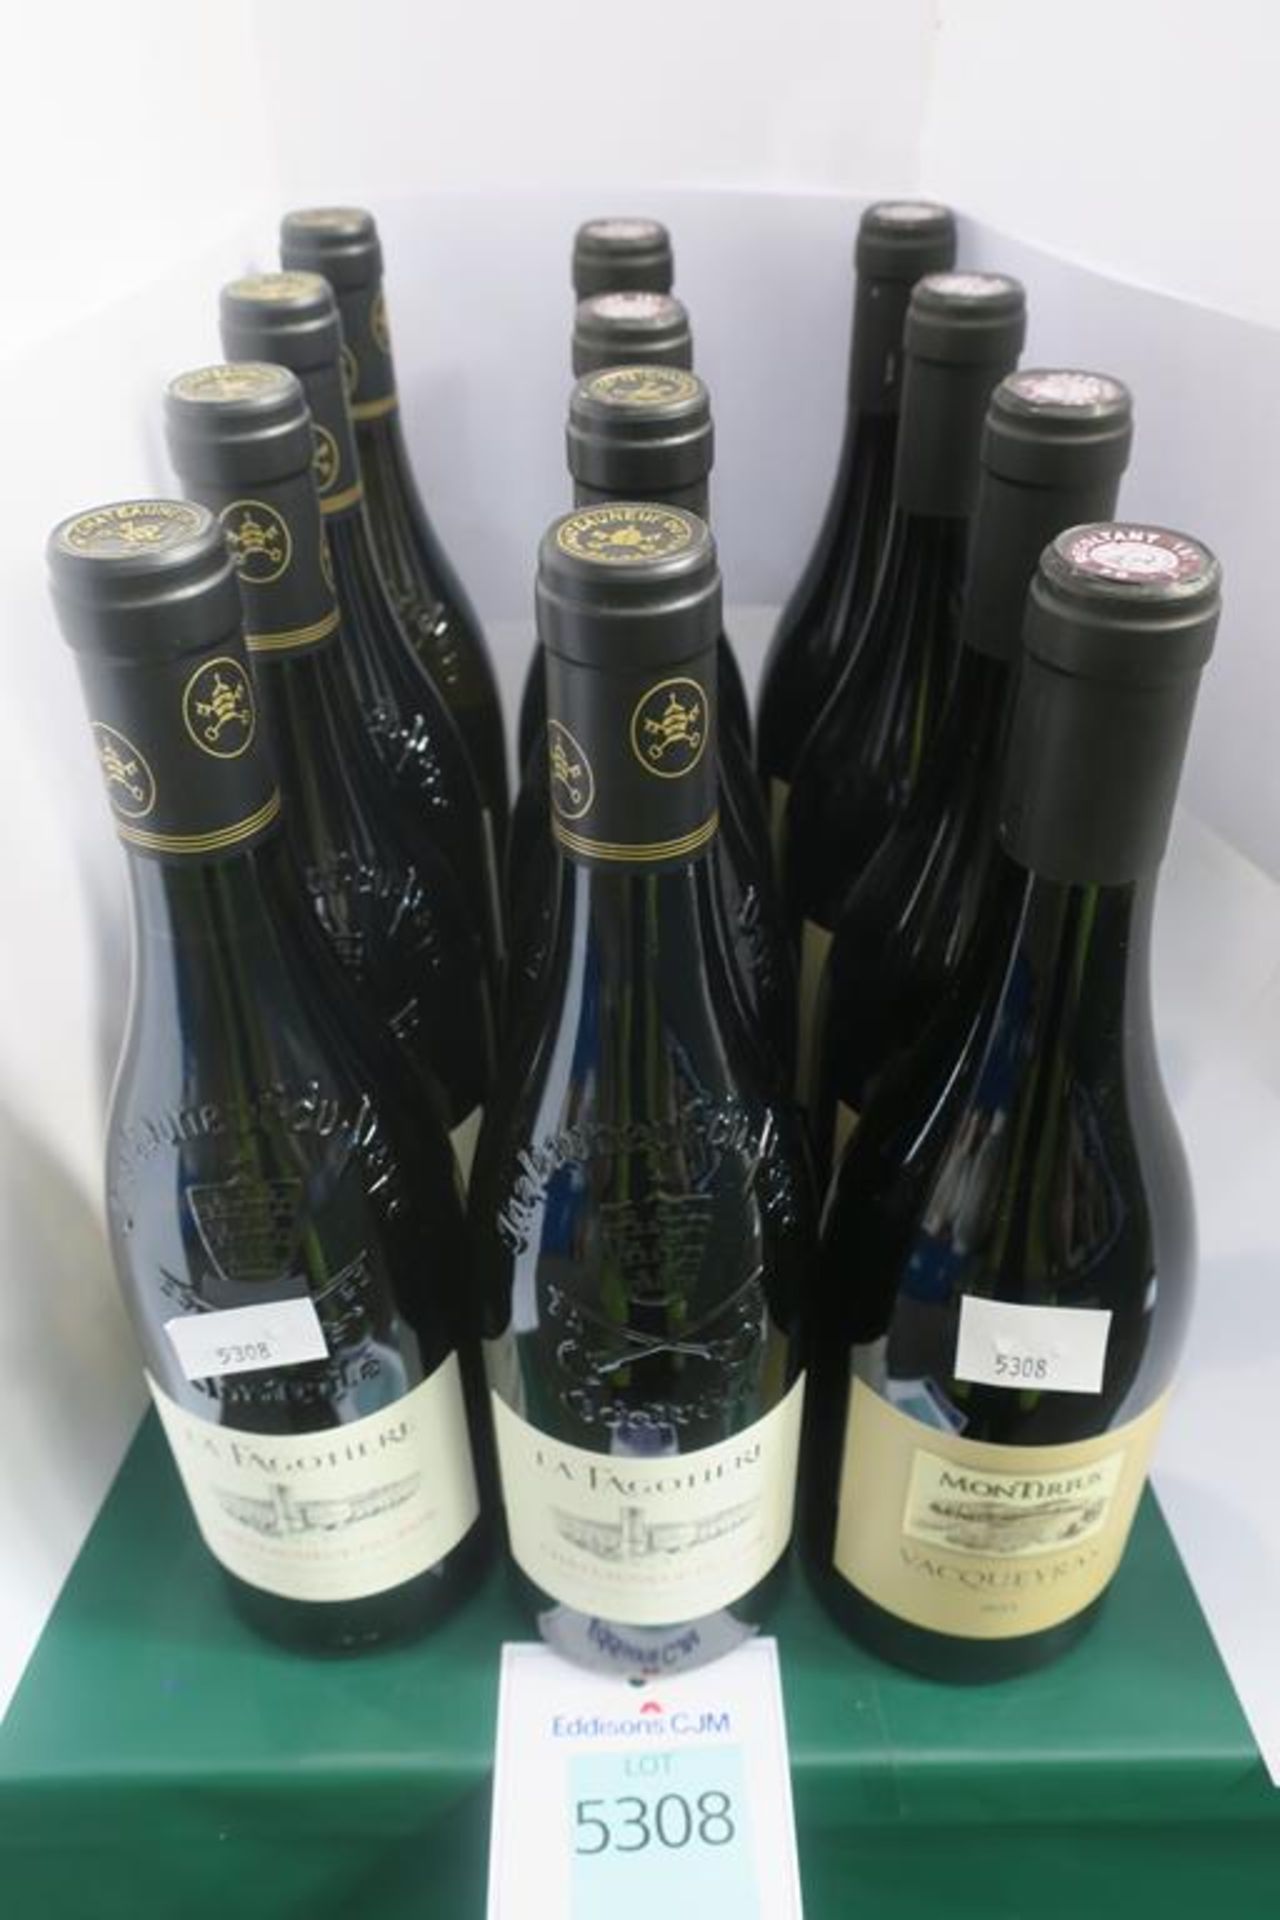 La Fagotière Châteauneuf-Du-Pape and Montirius Vacqueyras Wine